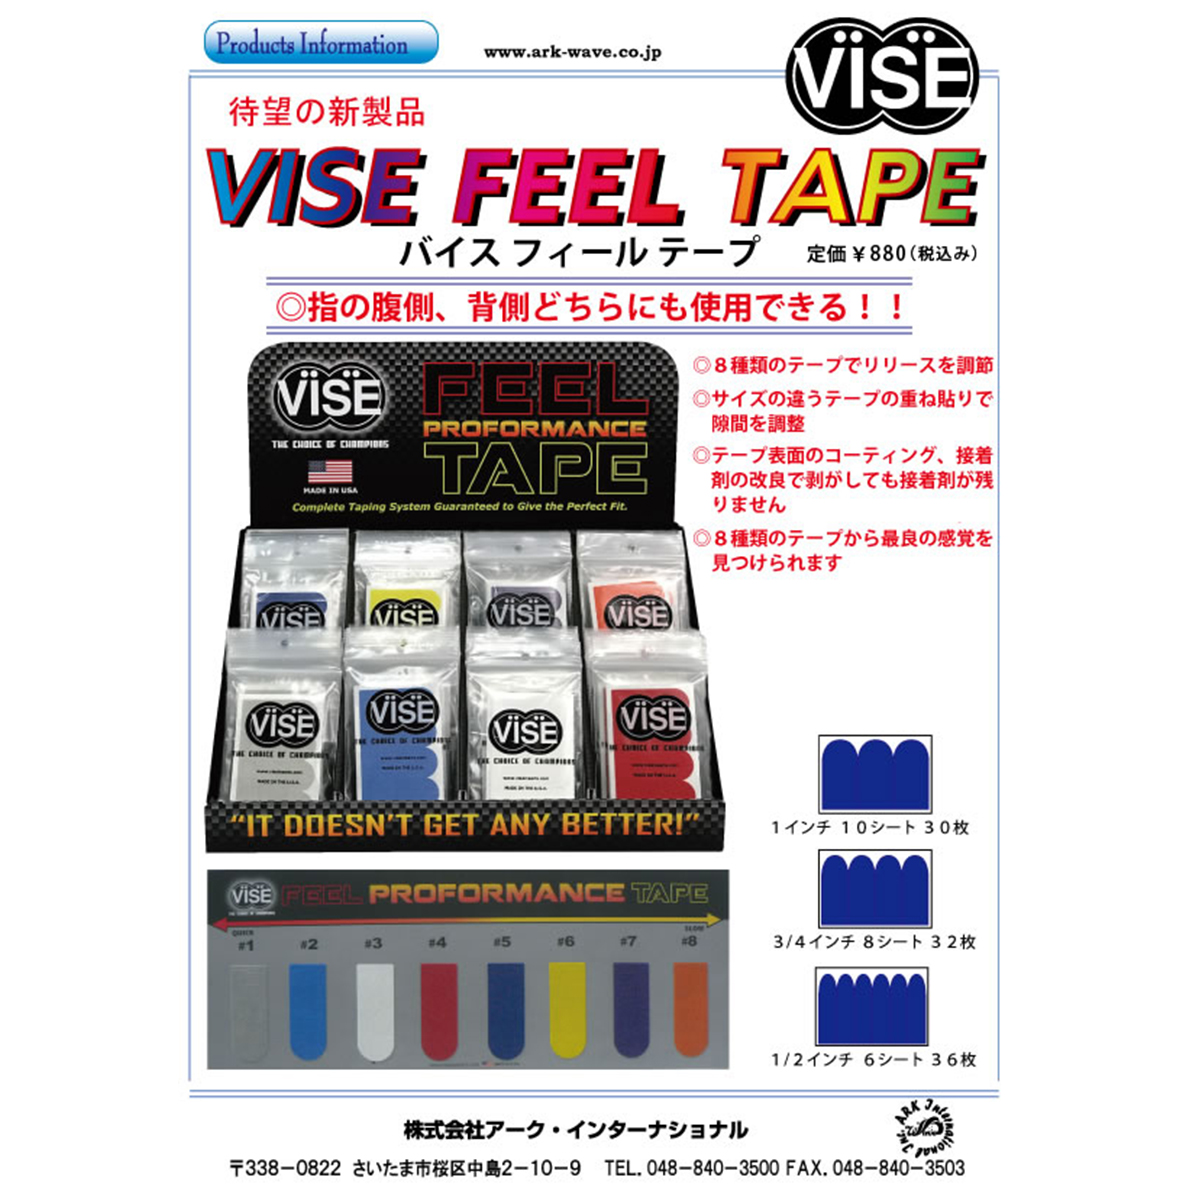 【12袋セット】VISE フィールテープ#2(水色) - ウインドウを閉じる